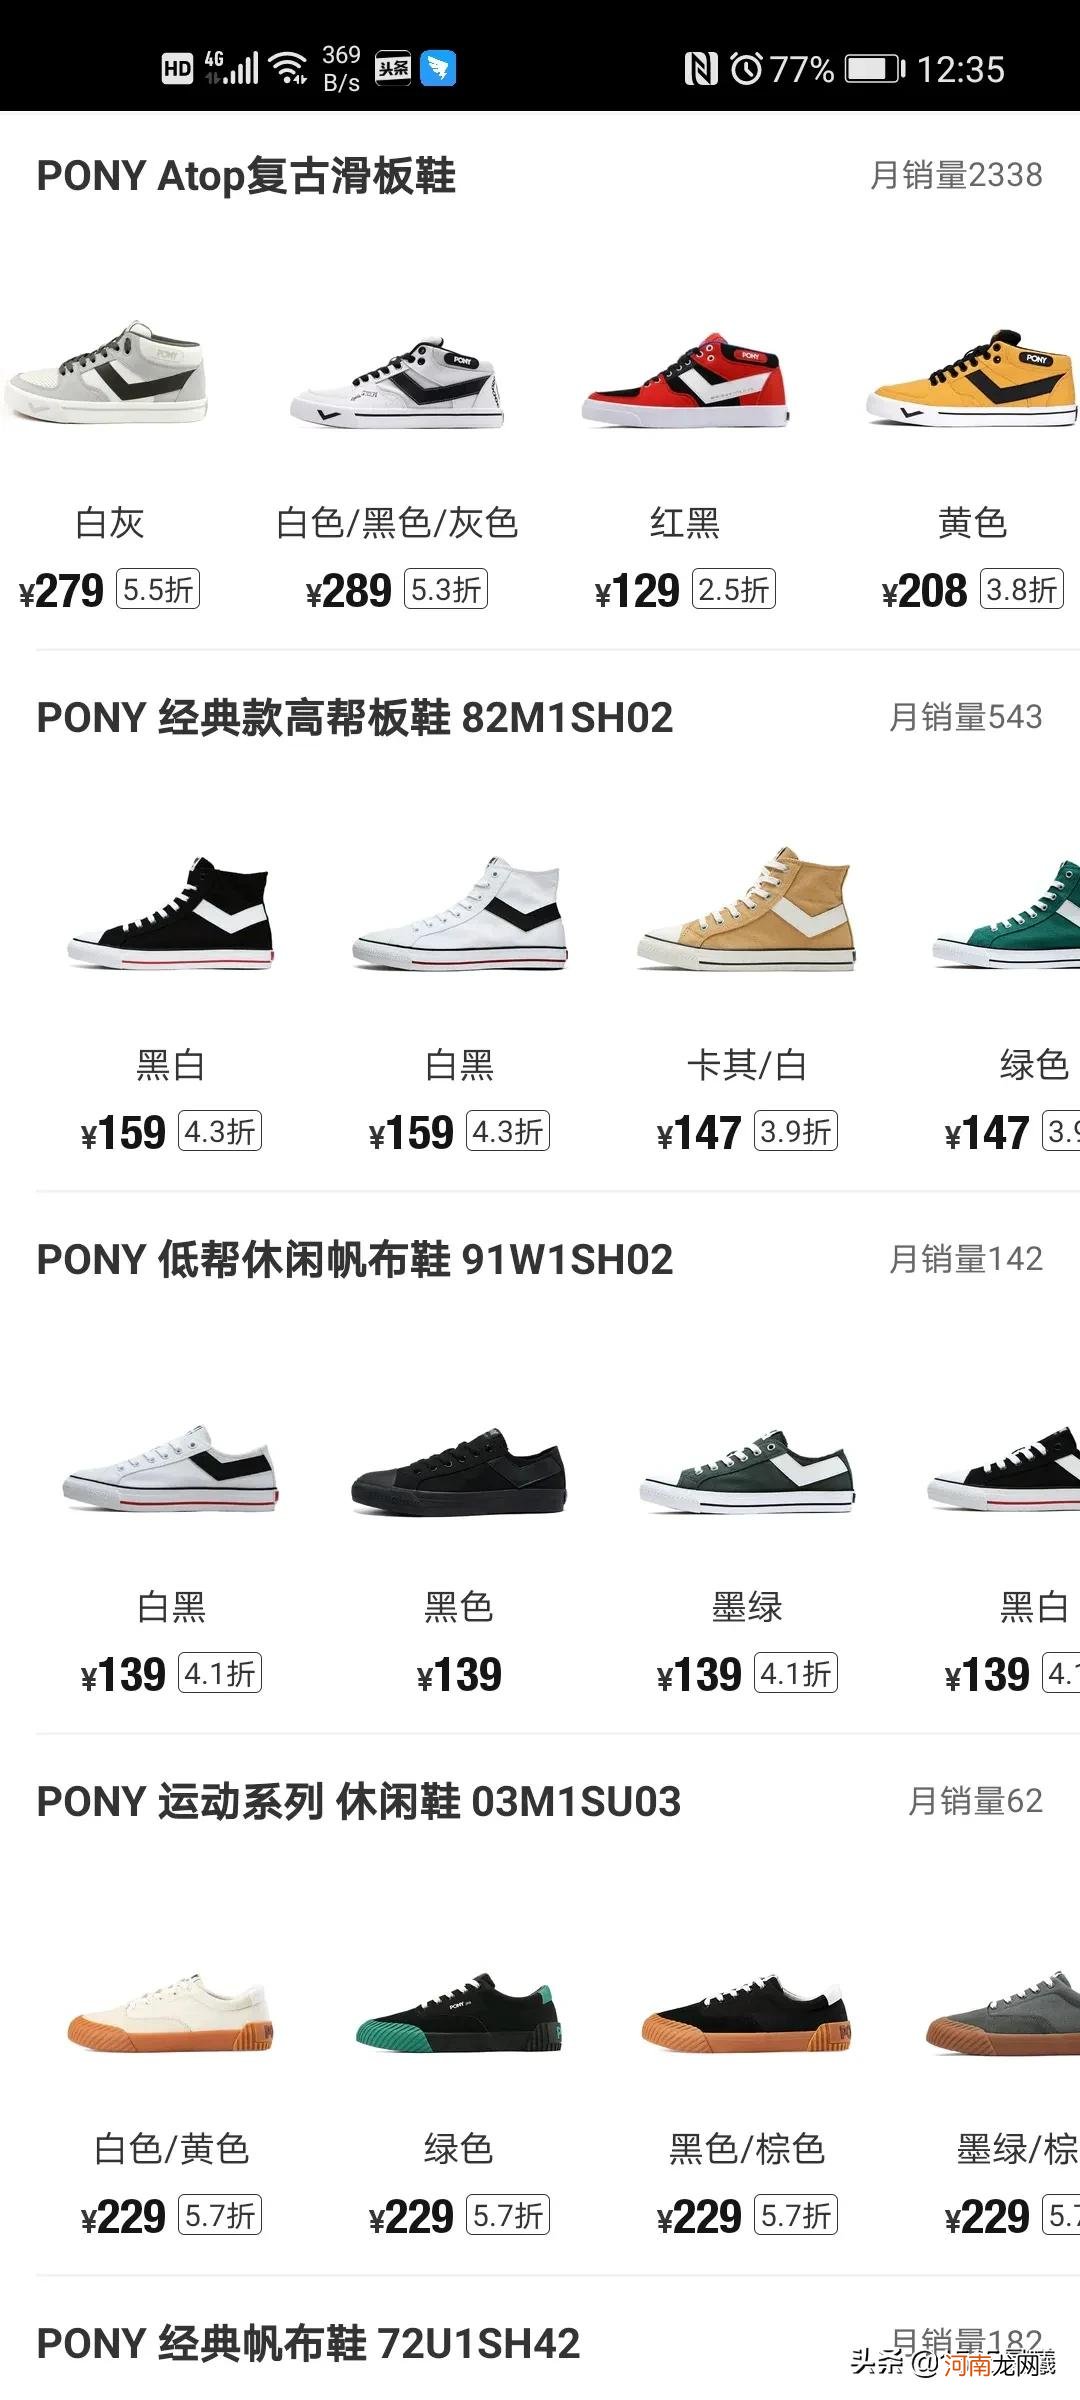 PONY球鞋圈最被低估的品牌